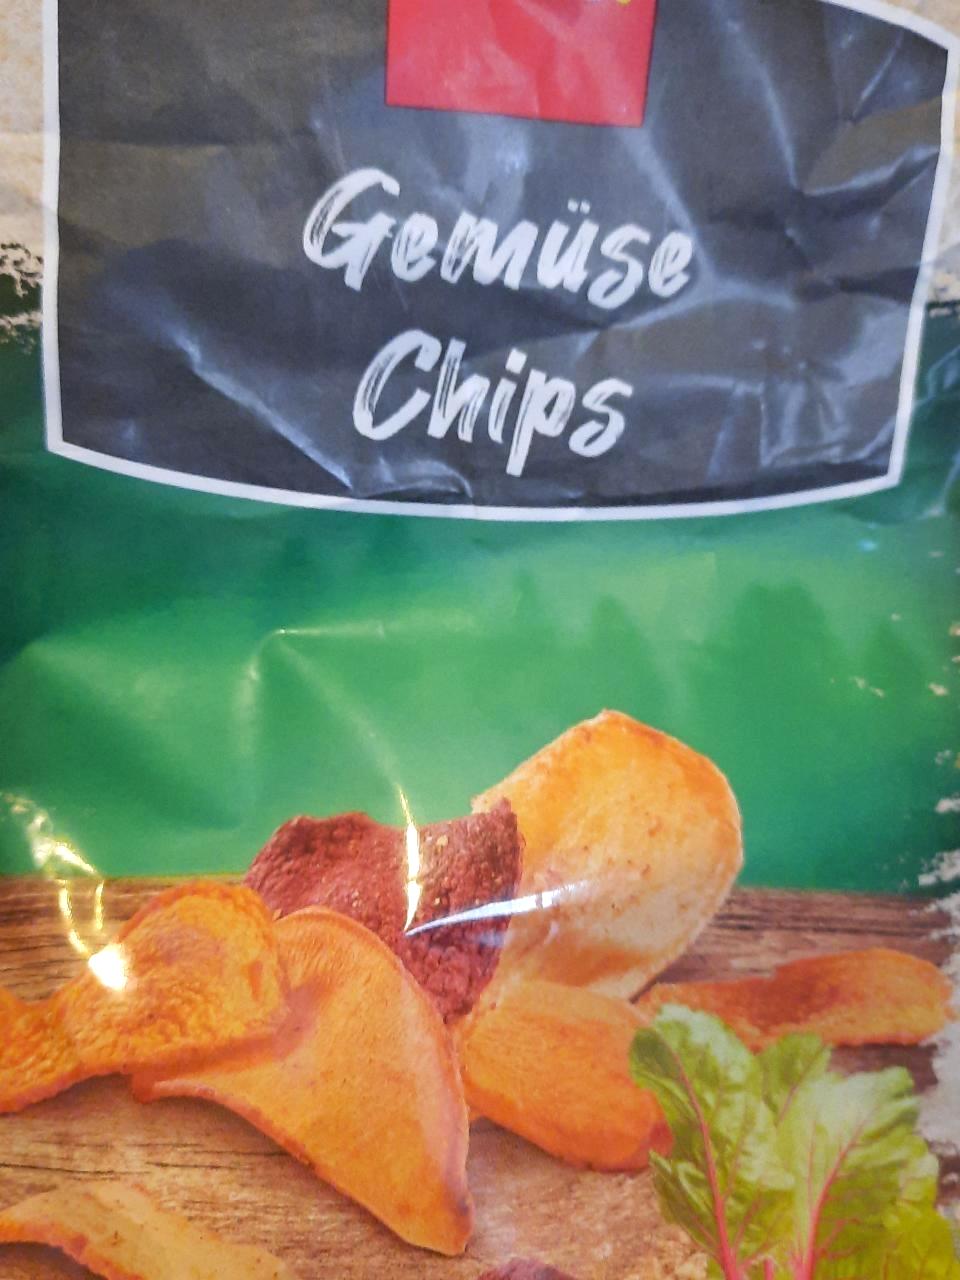 Képek - Gemüse chips Penny